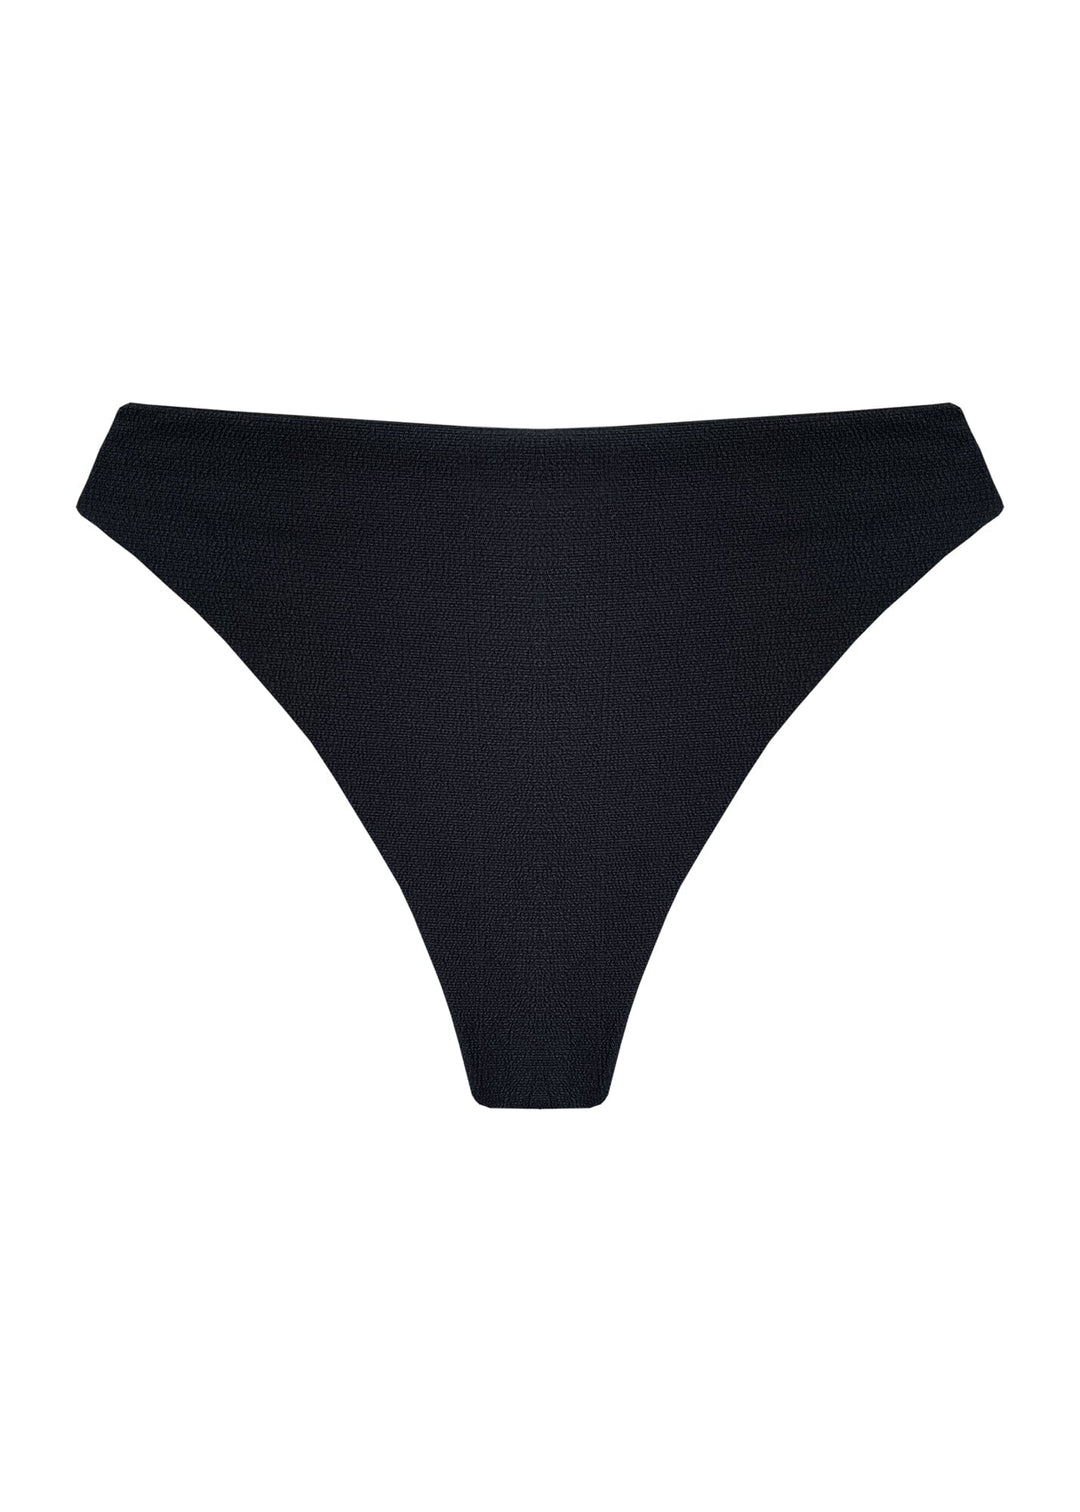 Loren Bottom - Black Sand Bottom Naked Swimwear 